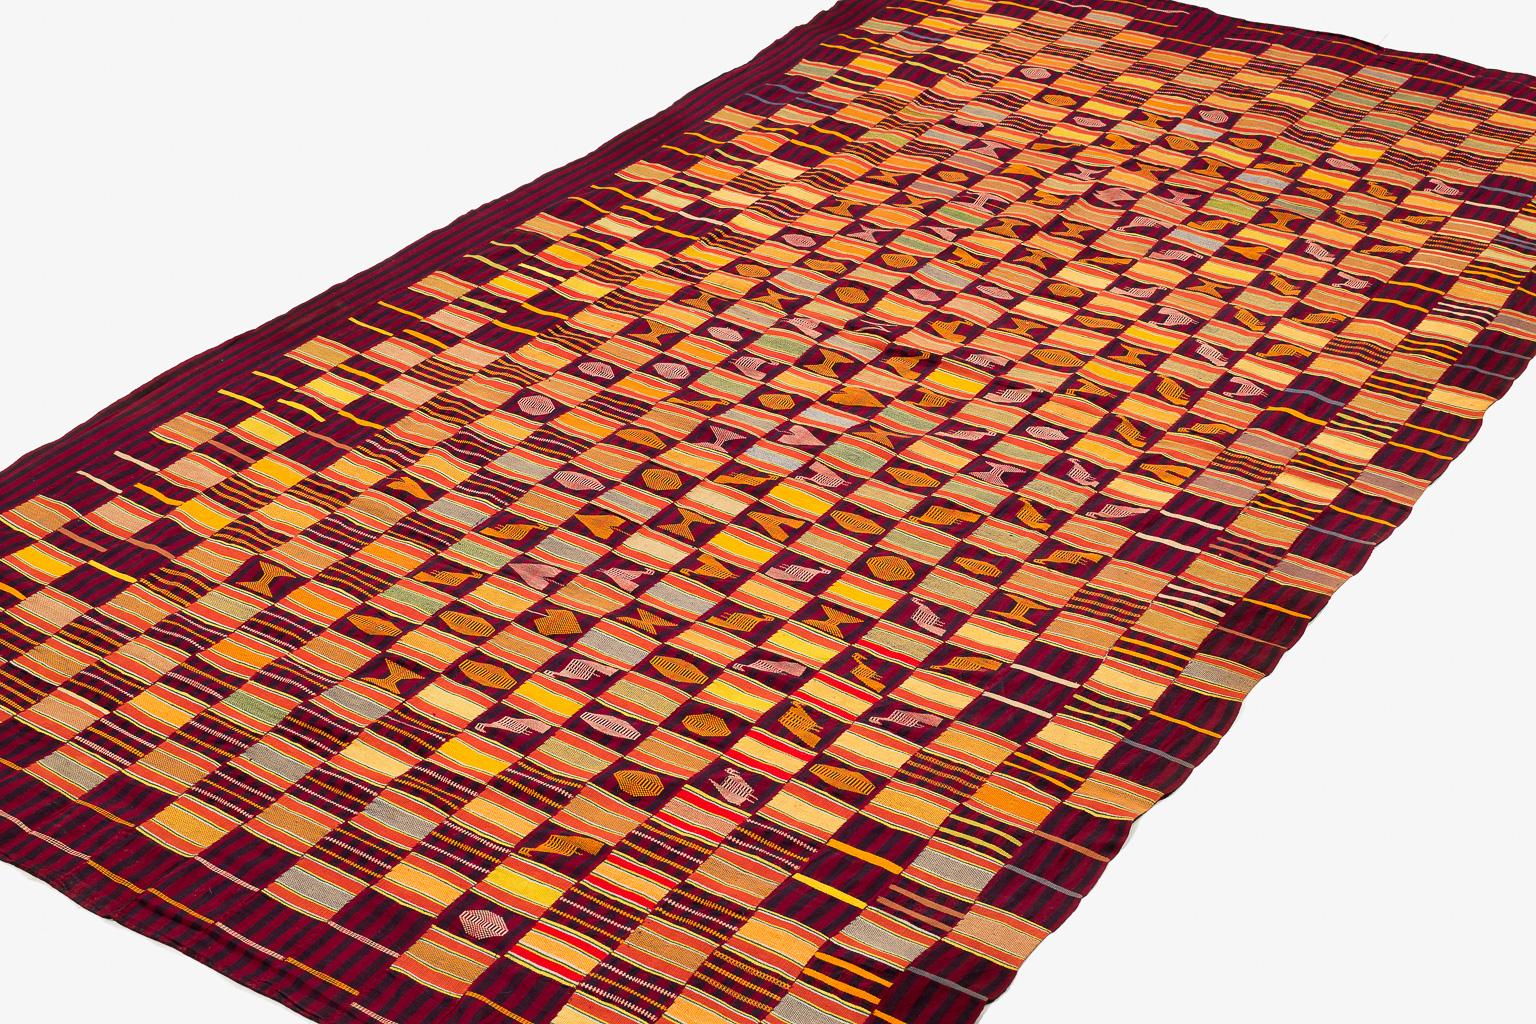 Ce tissu Ewe Kenta pour homme est tissé dans des couleurs éclatantes : jaune citron, rouge, vert citron, vert foncé, orange et un peu de bleu sur un champ de bordeaux violet profond et d'indigo profond. Les motifs tissés représentent différentes